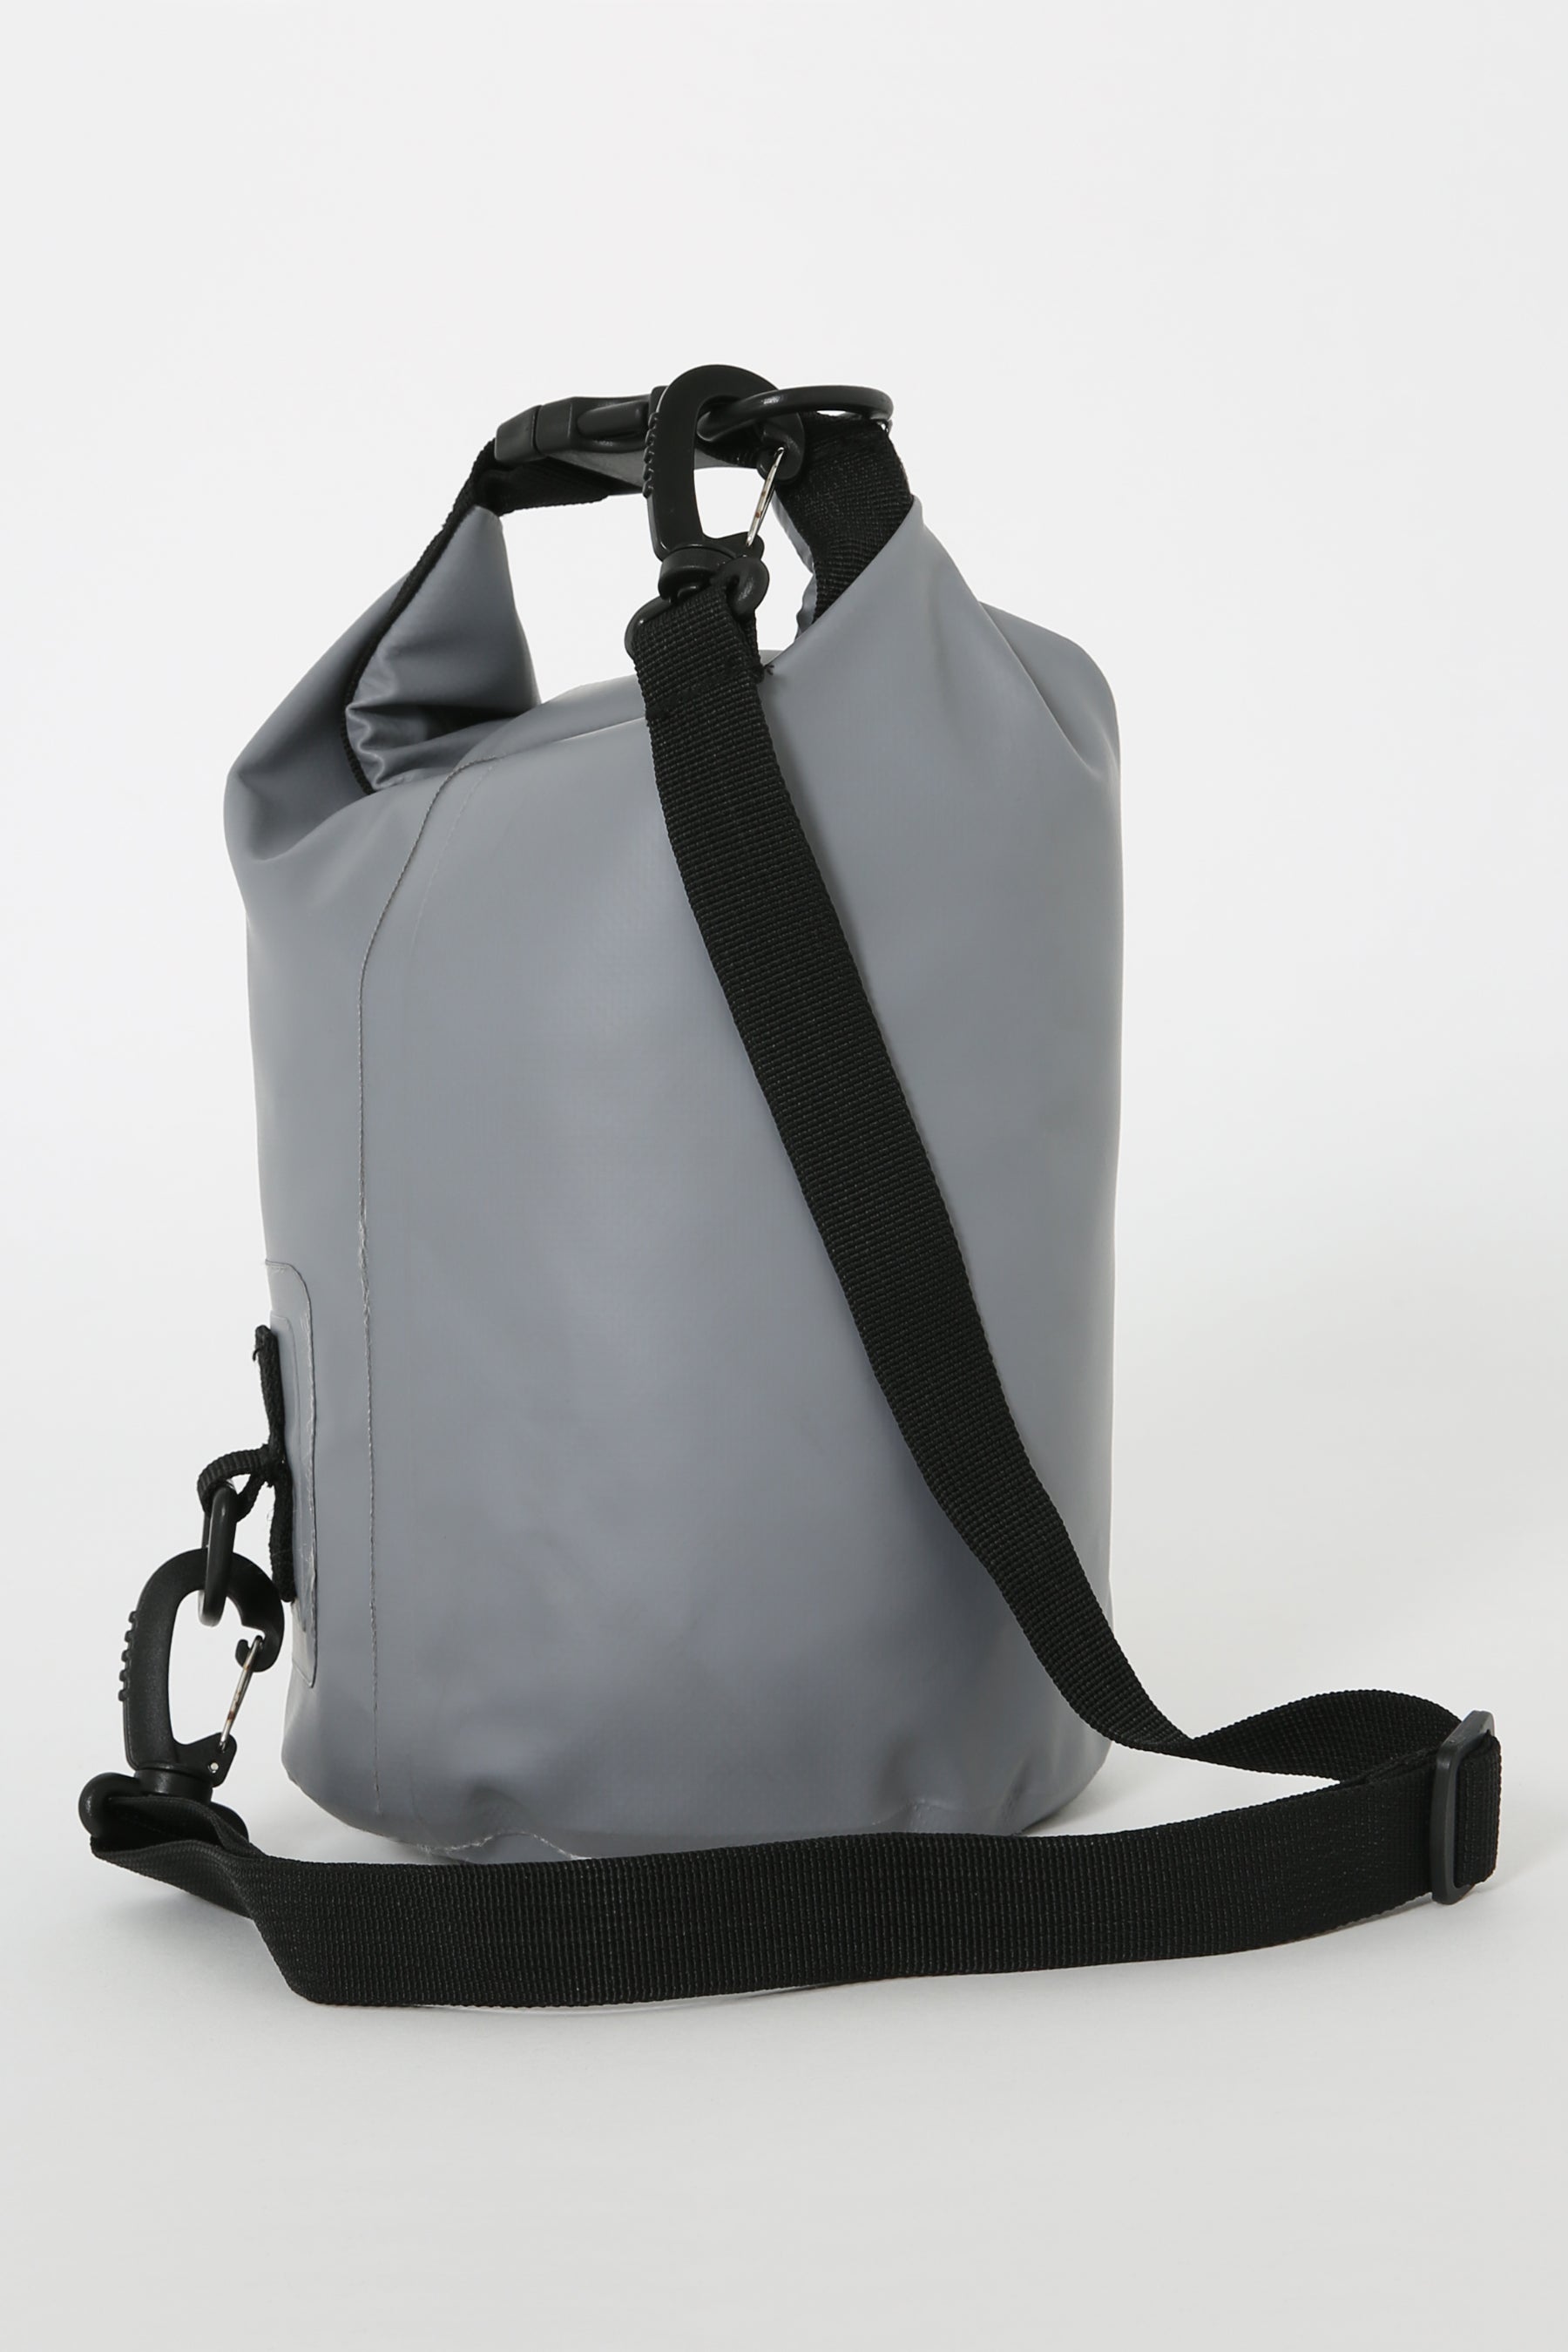 Jetpilot Venture 5l Drysafe Bag - Grey